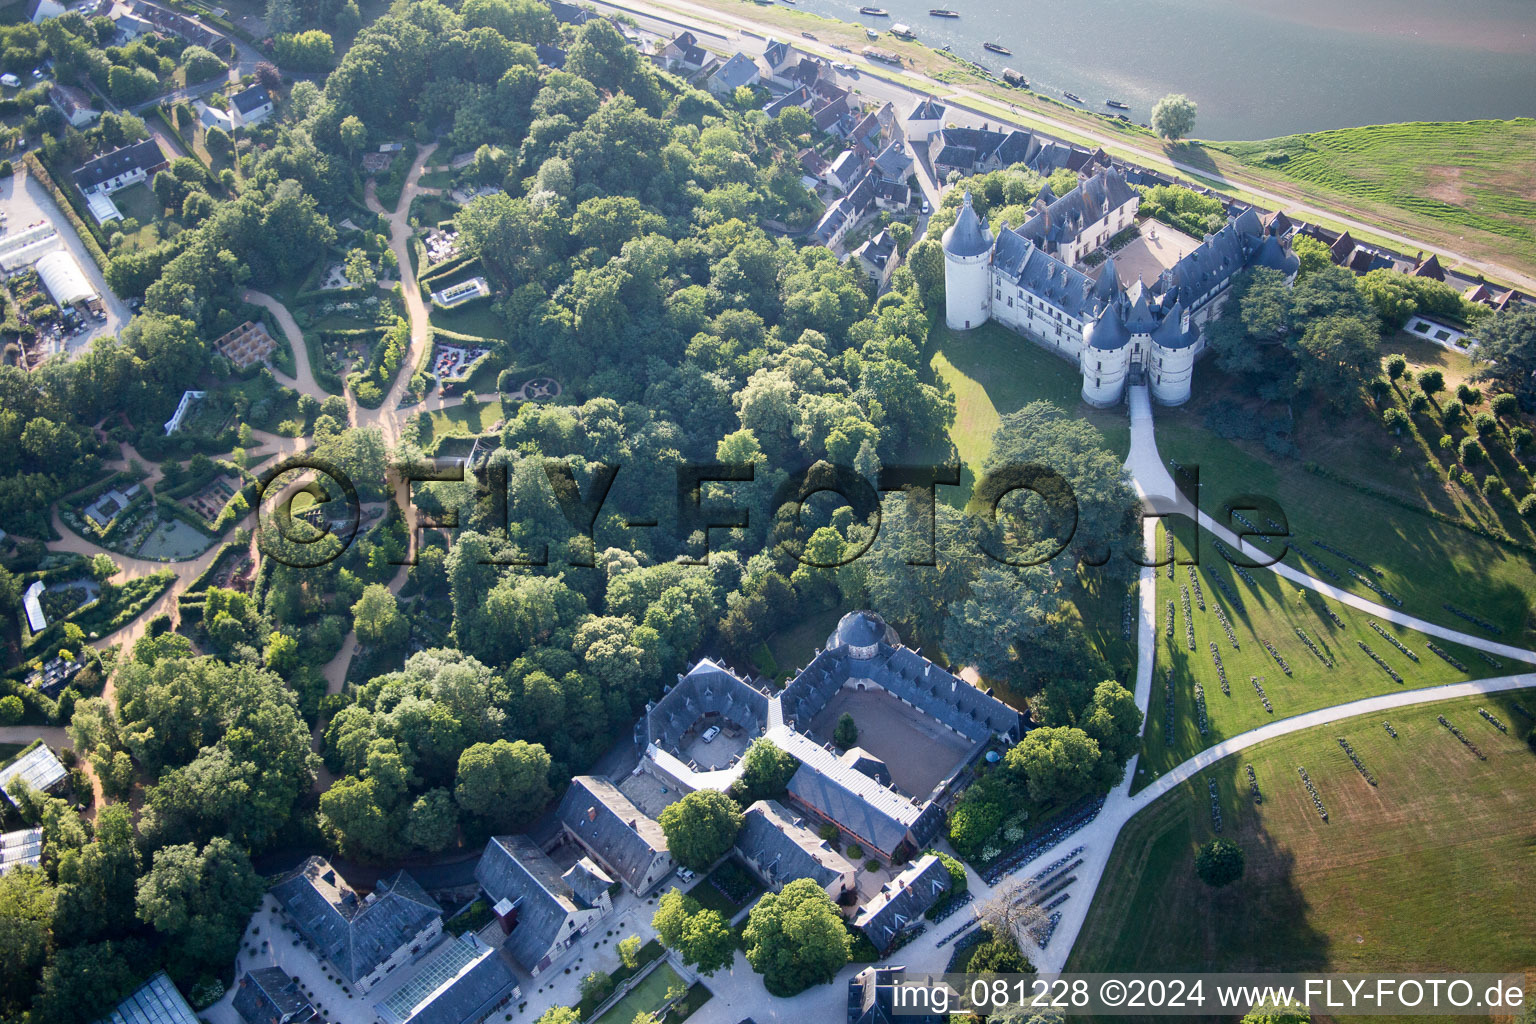 Aerial view of Castle of Schloss Chaumont in Chaumont-sur-Loire in Centre-Val de Loire, France